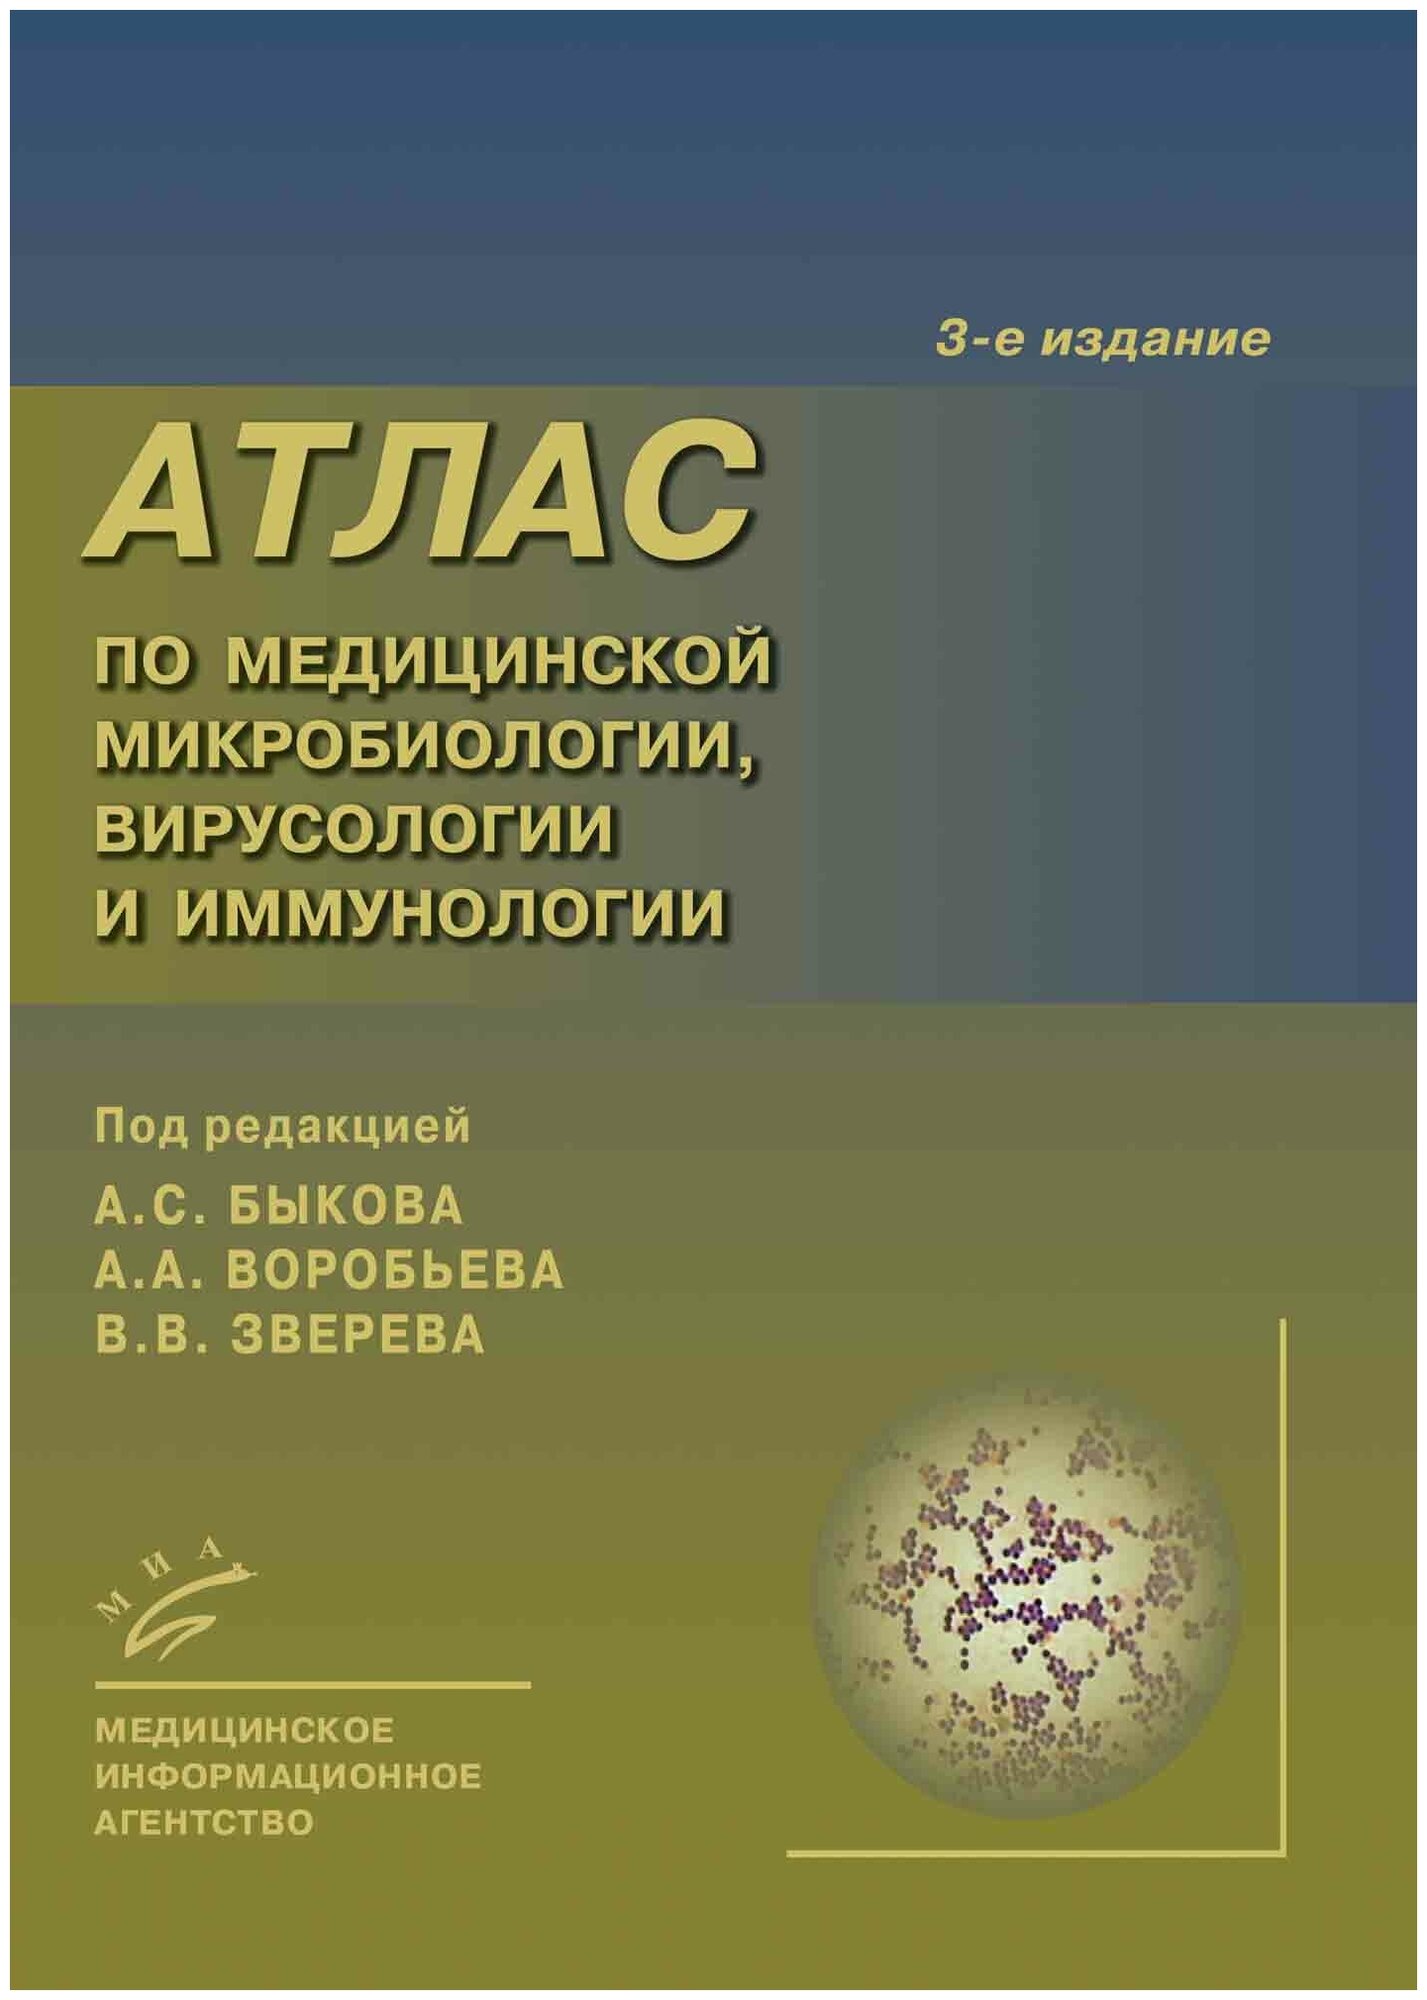 Атлас по медицинской микробиологии, вирусологии, и иммунологии. 3-е изд.